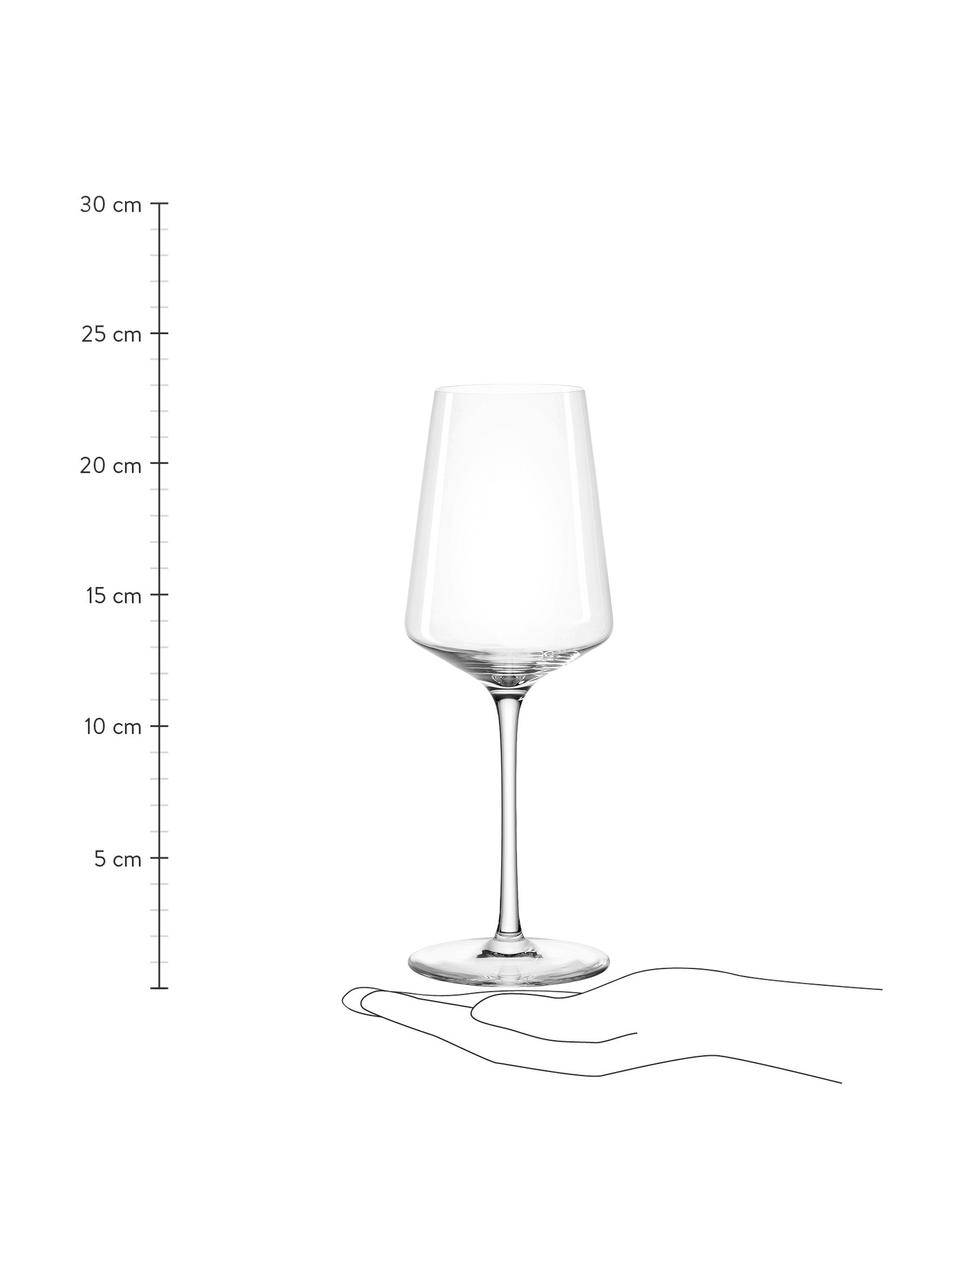 Bicchiere da vino bianco Puccini 6 pz, Vetro Teqton®, Trasparente, Ø 8 x Alt. 23 cm, 400 ml